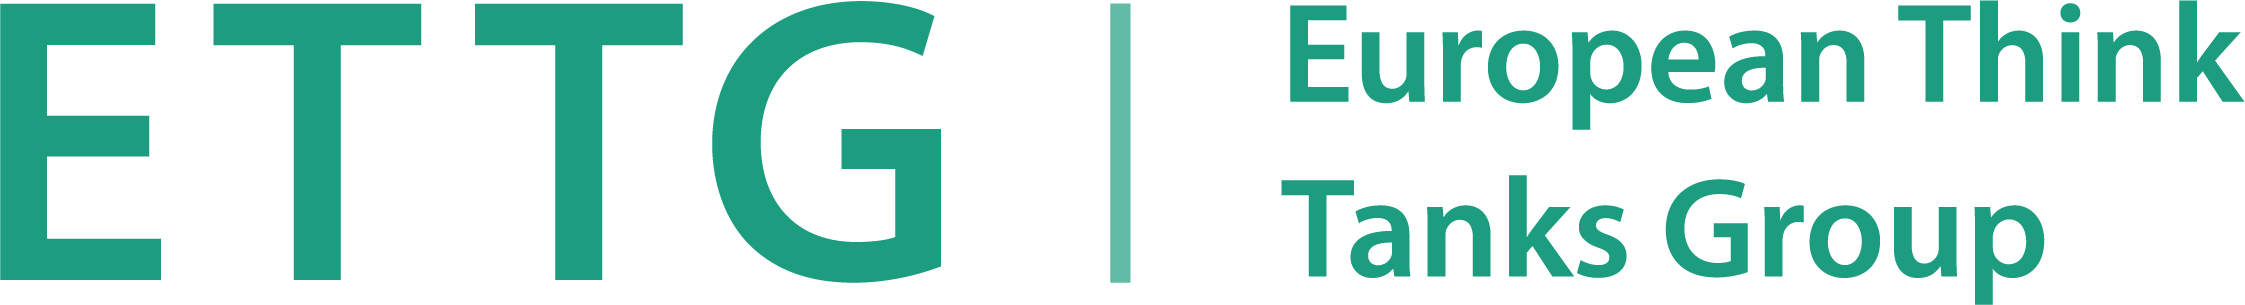 ETTG-logo-green%20(1).png